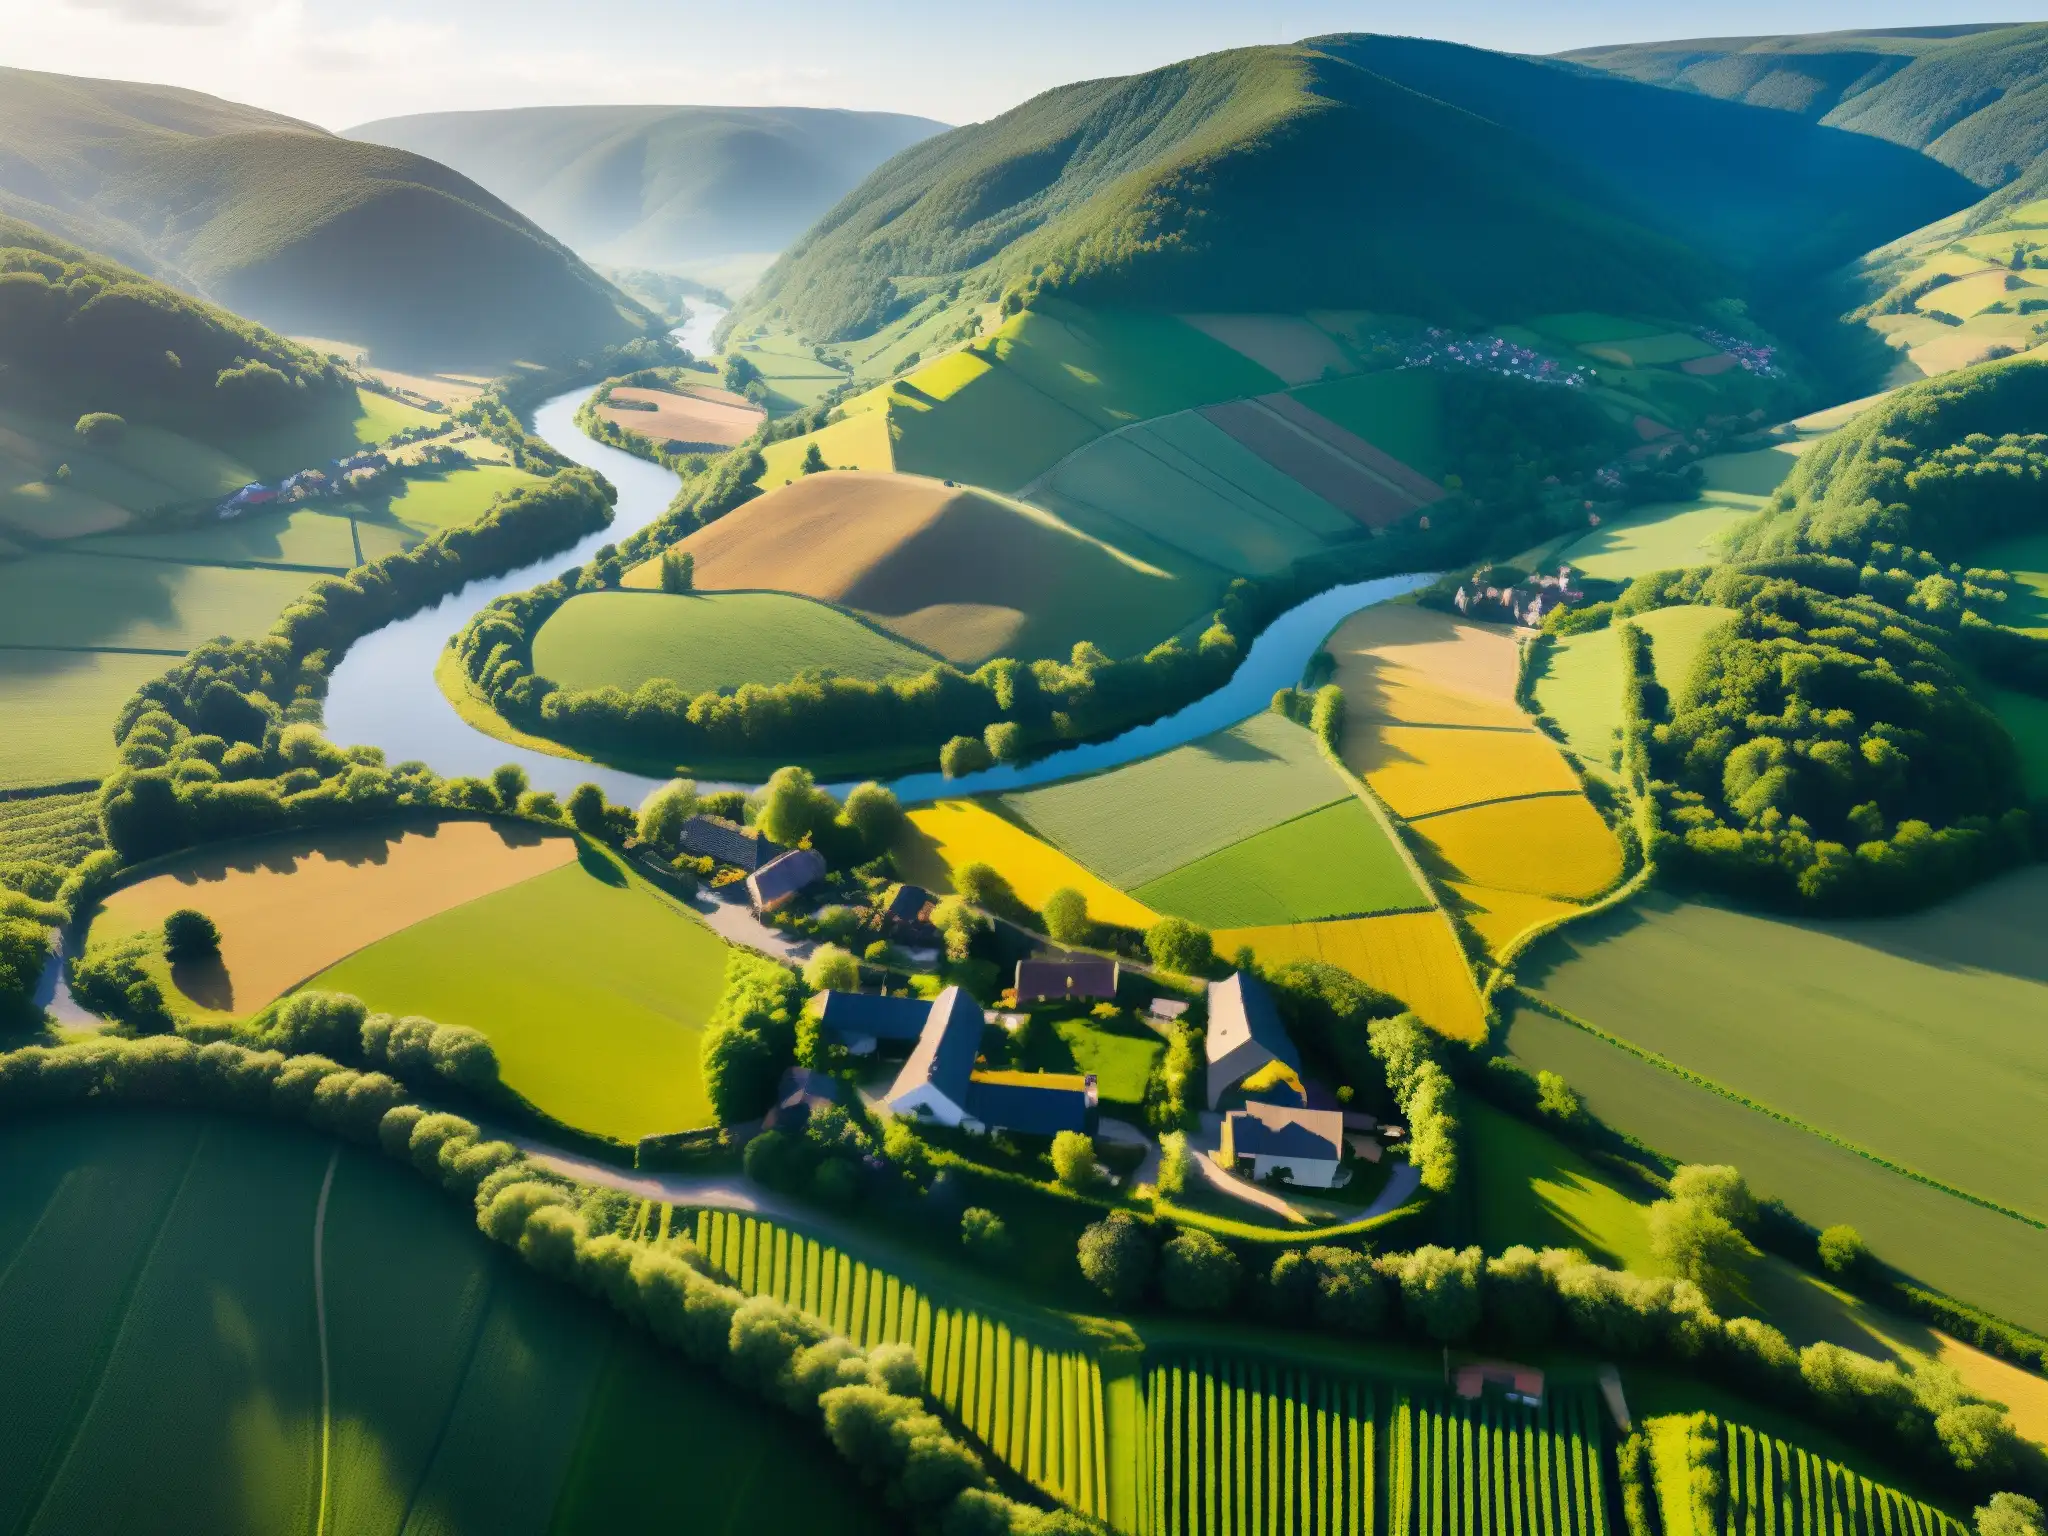 Vista aérea de un pintoresco pueblo rural en un valle exuberante